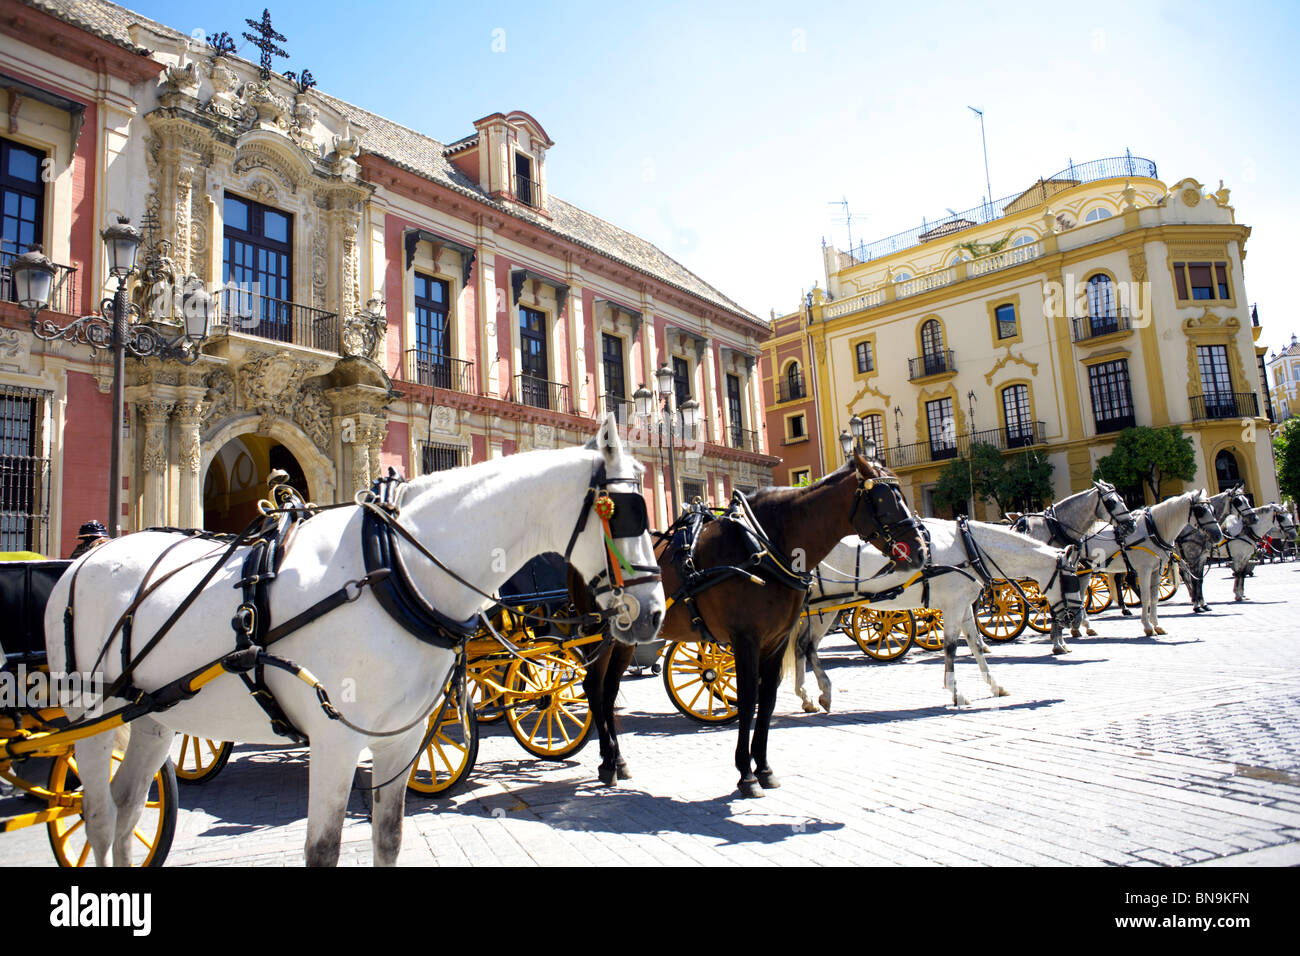 Pferdekutschen warten im Plaza del Triunfo, Sevilla, Andalusien, Spanien, Europa, Stockfoto